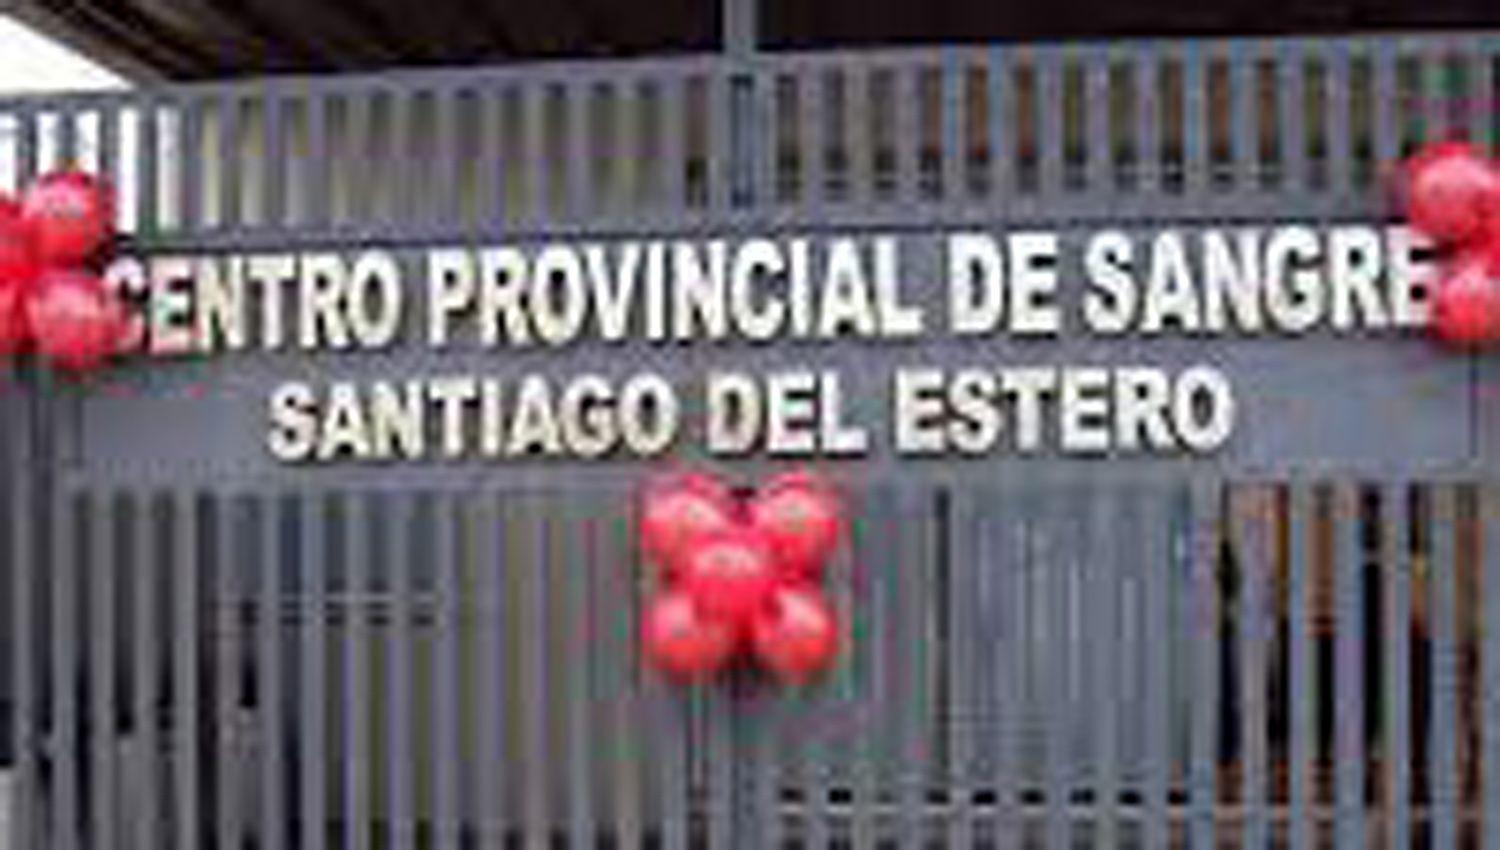 En Santiago la colecta se concretar� en el Centro
Provincial de Sangre